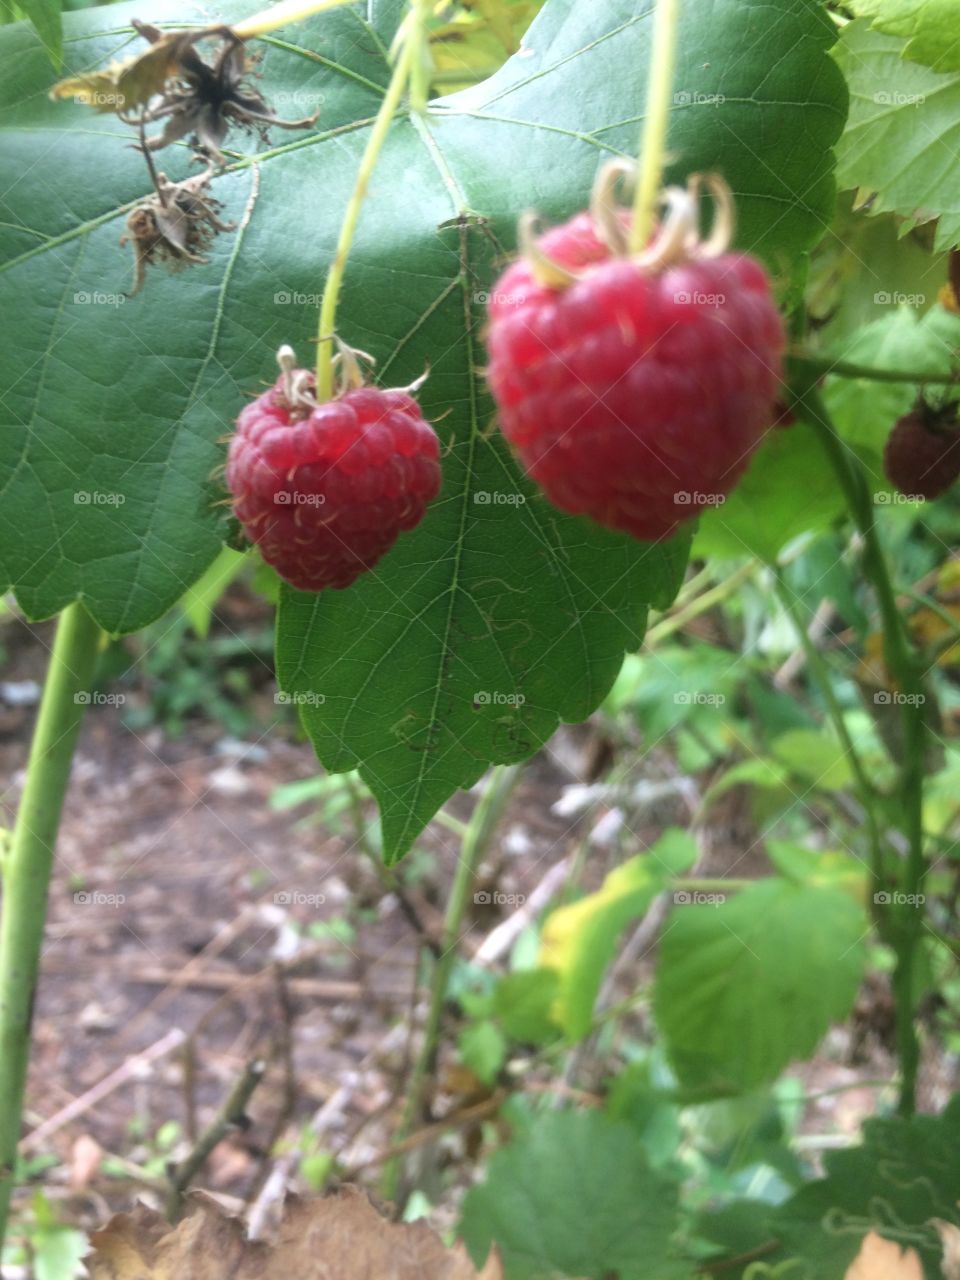 Delicious rasberry